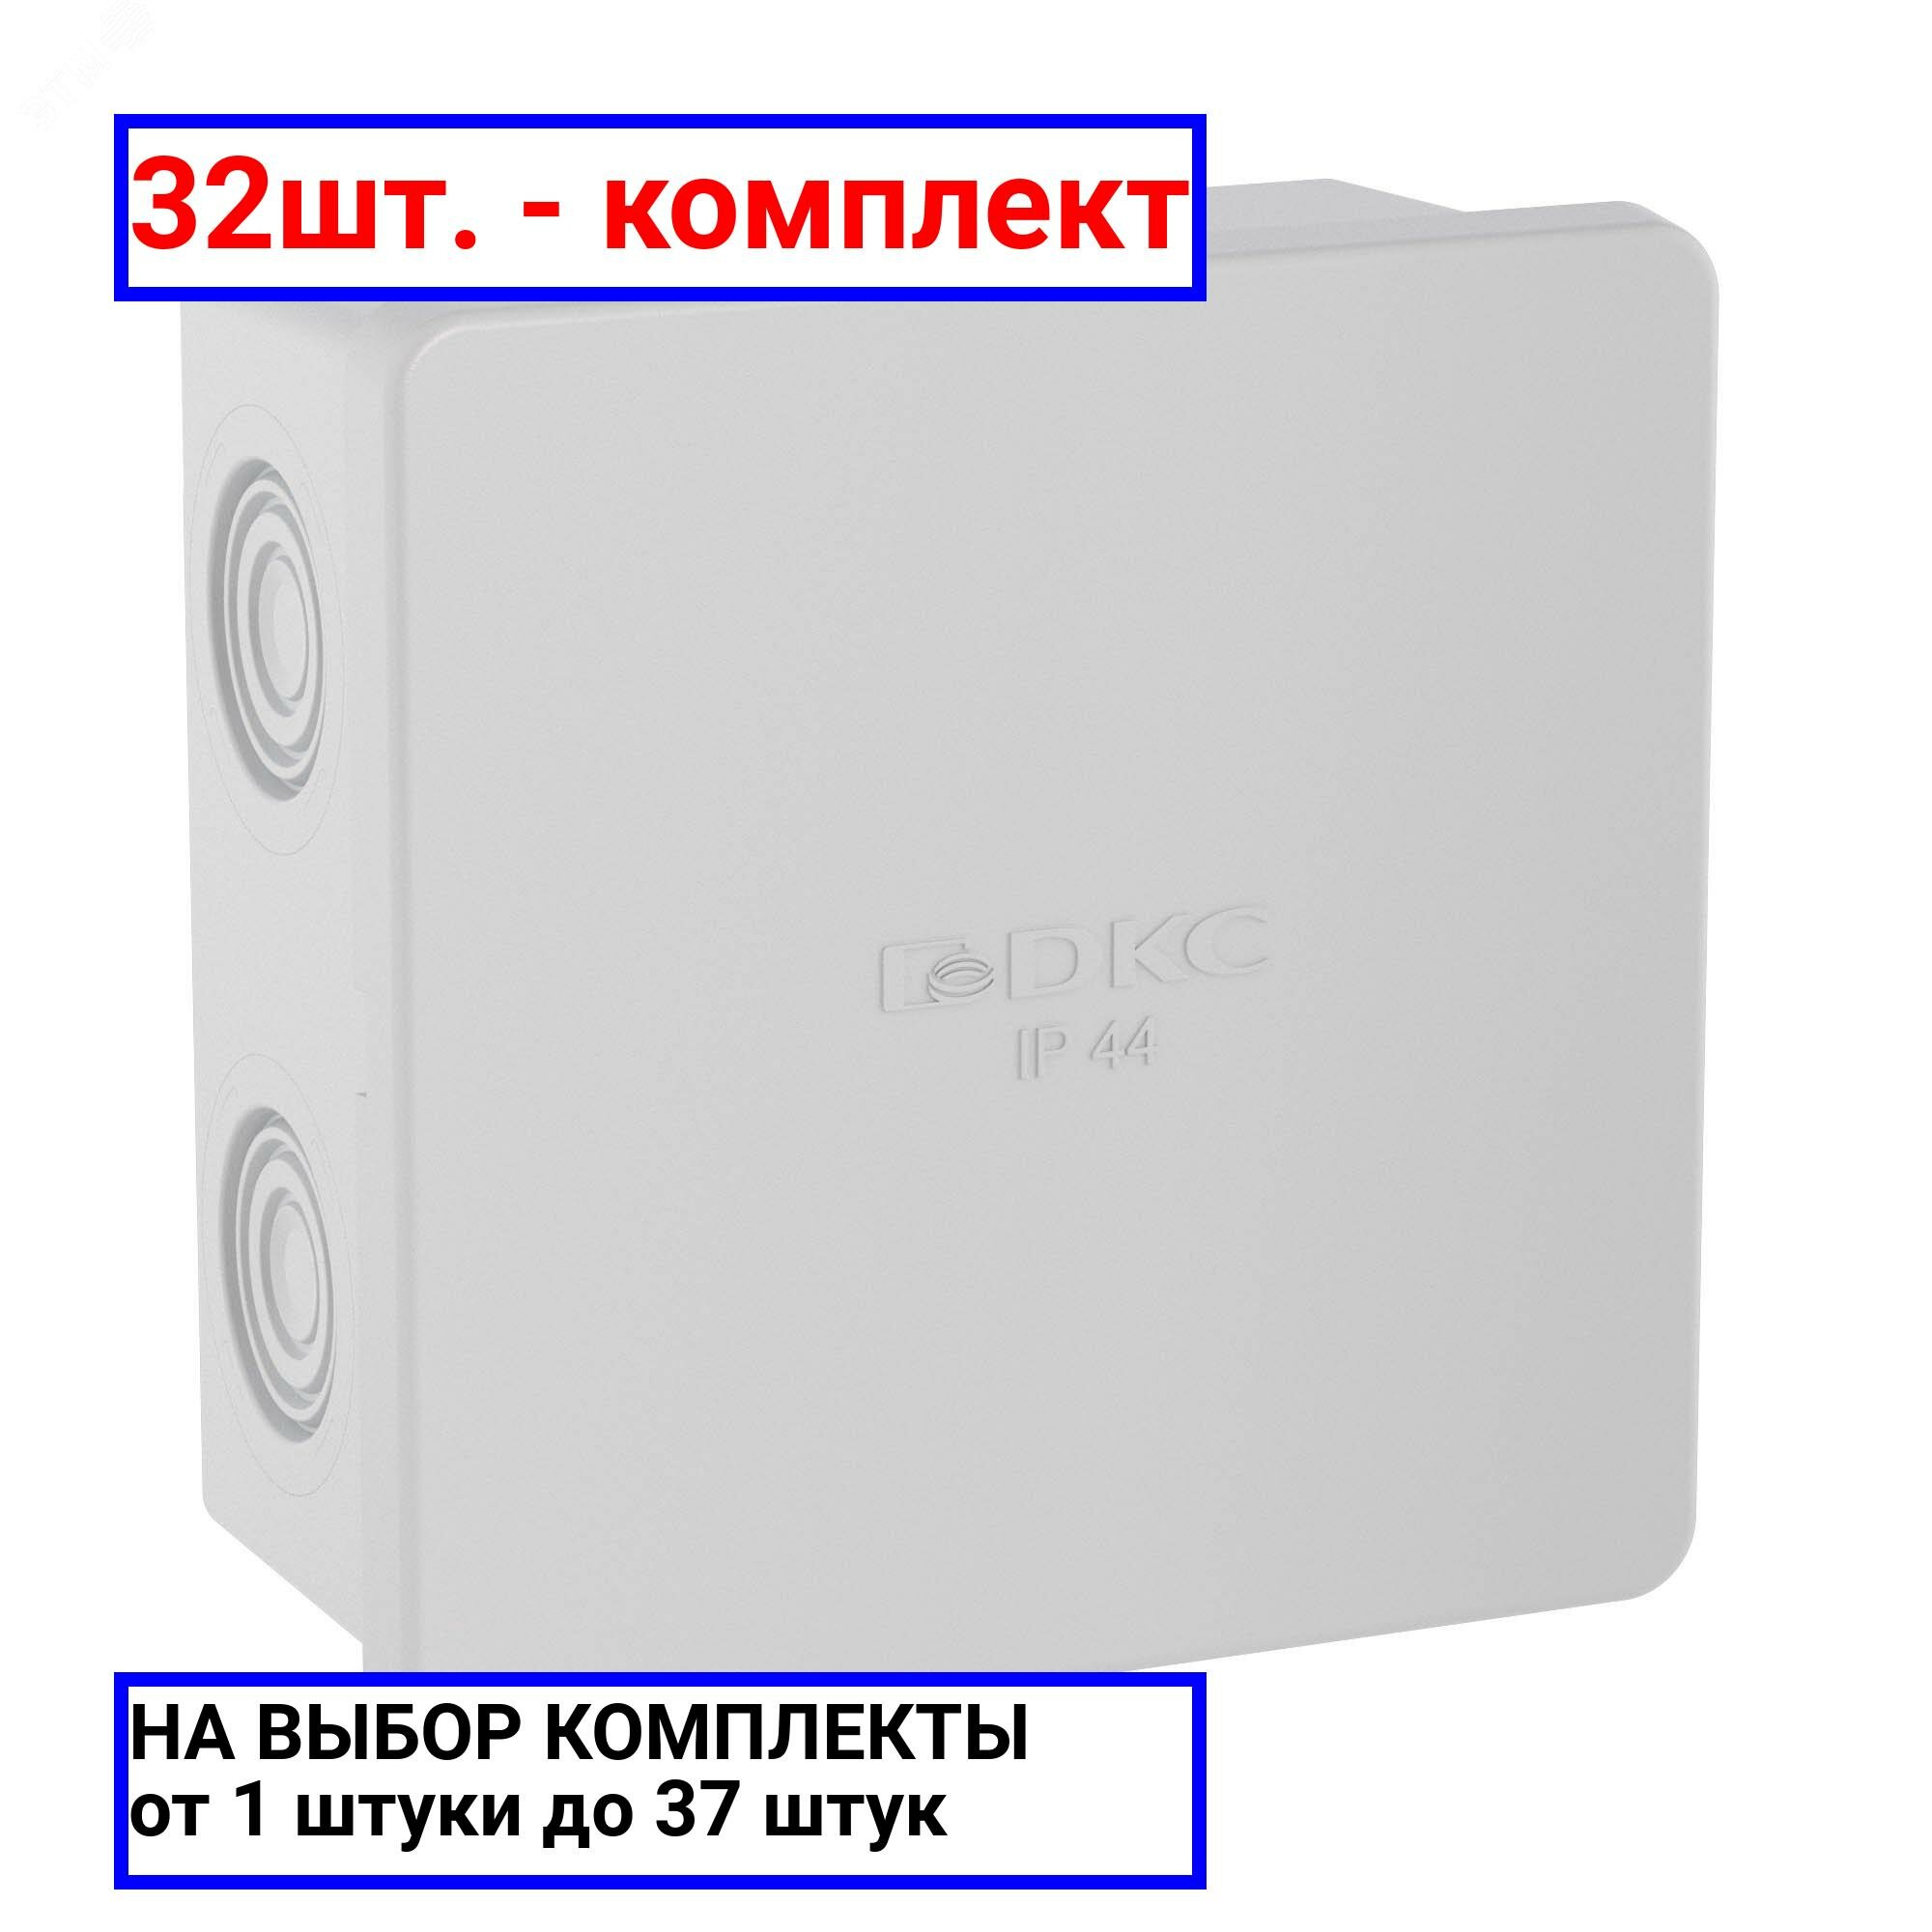 32шт. - Коробка распределительная 80х80х40мм IP44 с кабельными вводами / DKC; арт. 53700; оригинал / - комплект 32шт